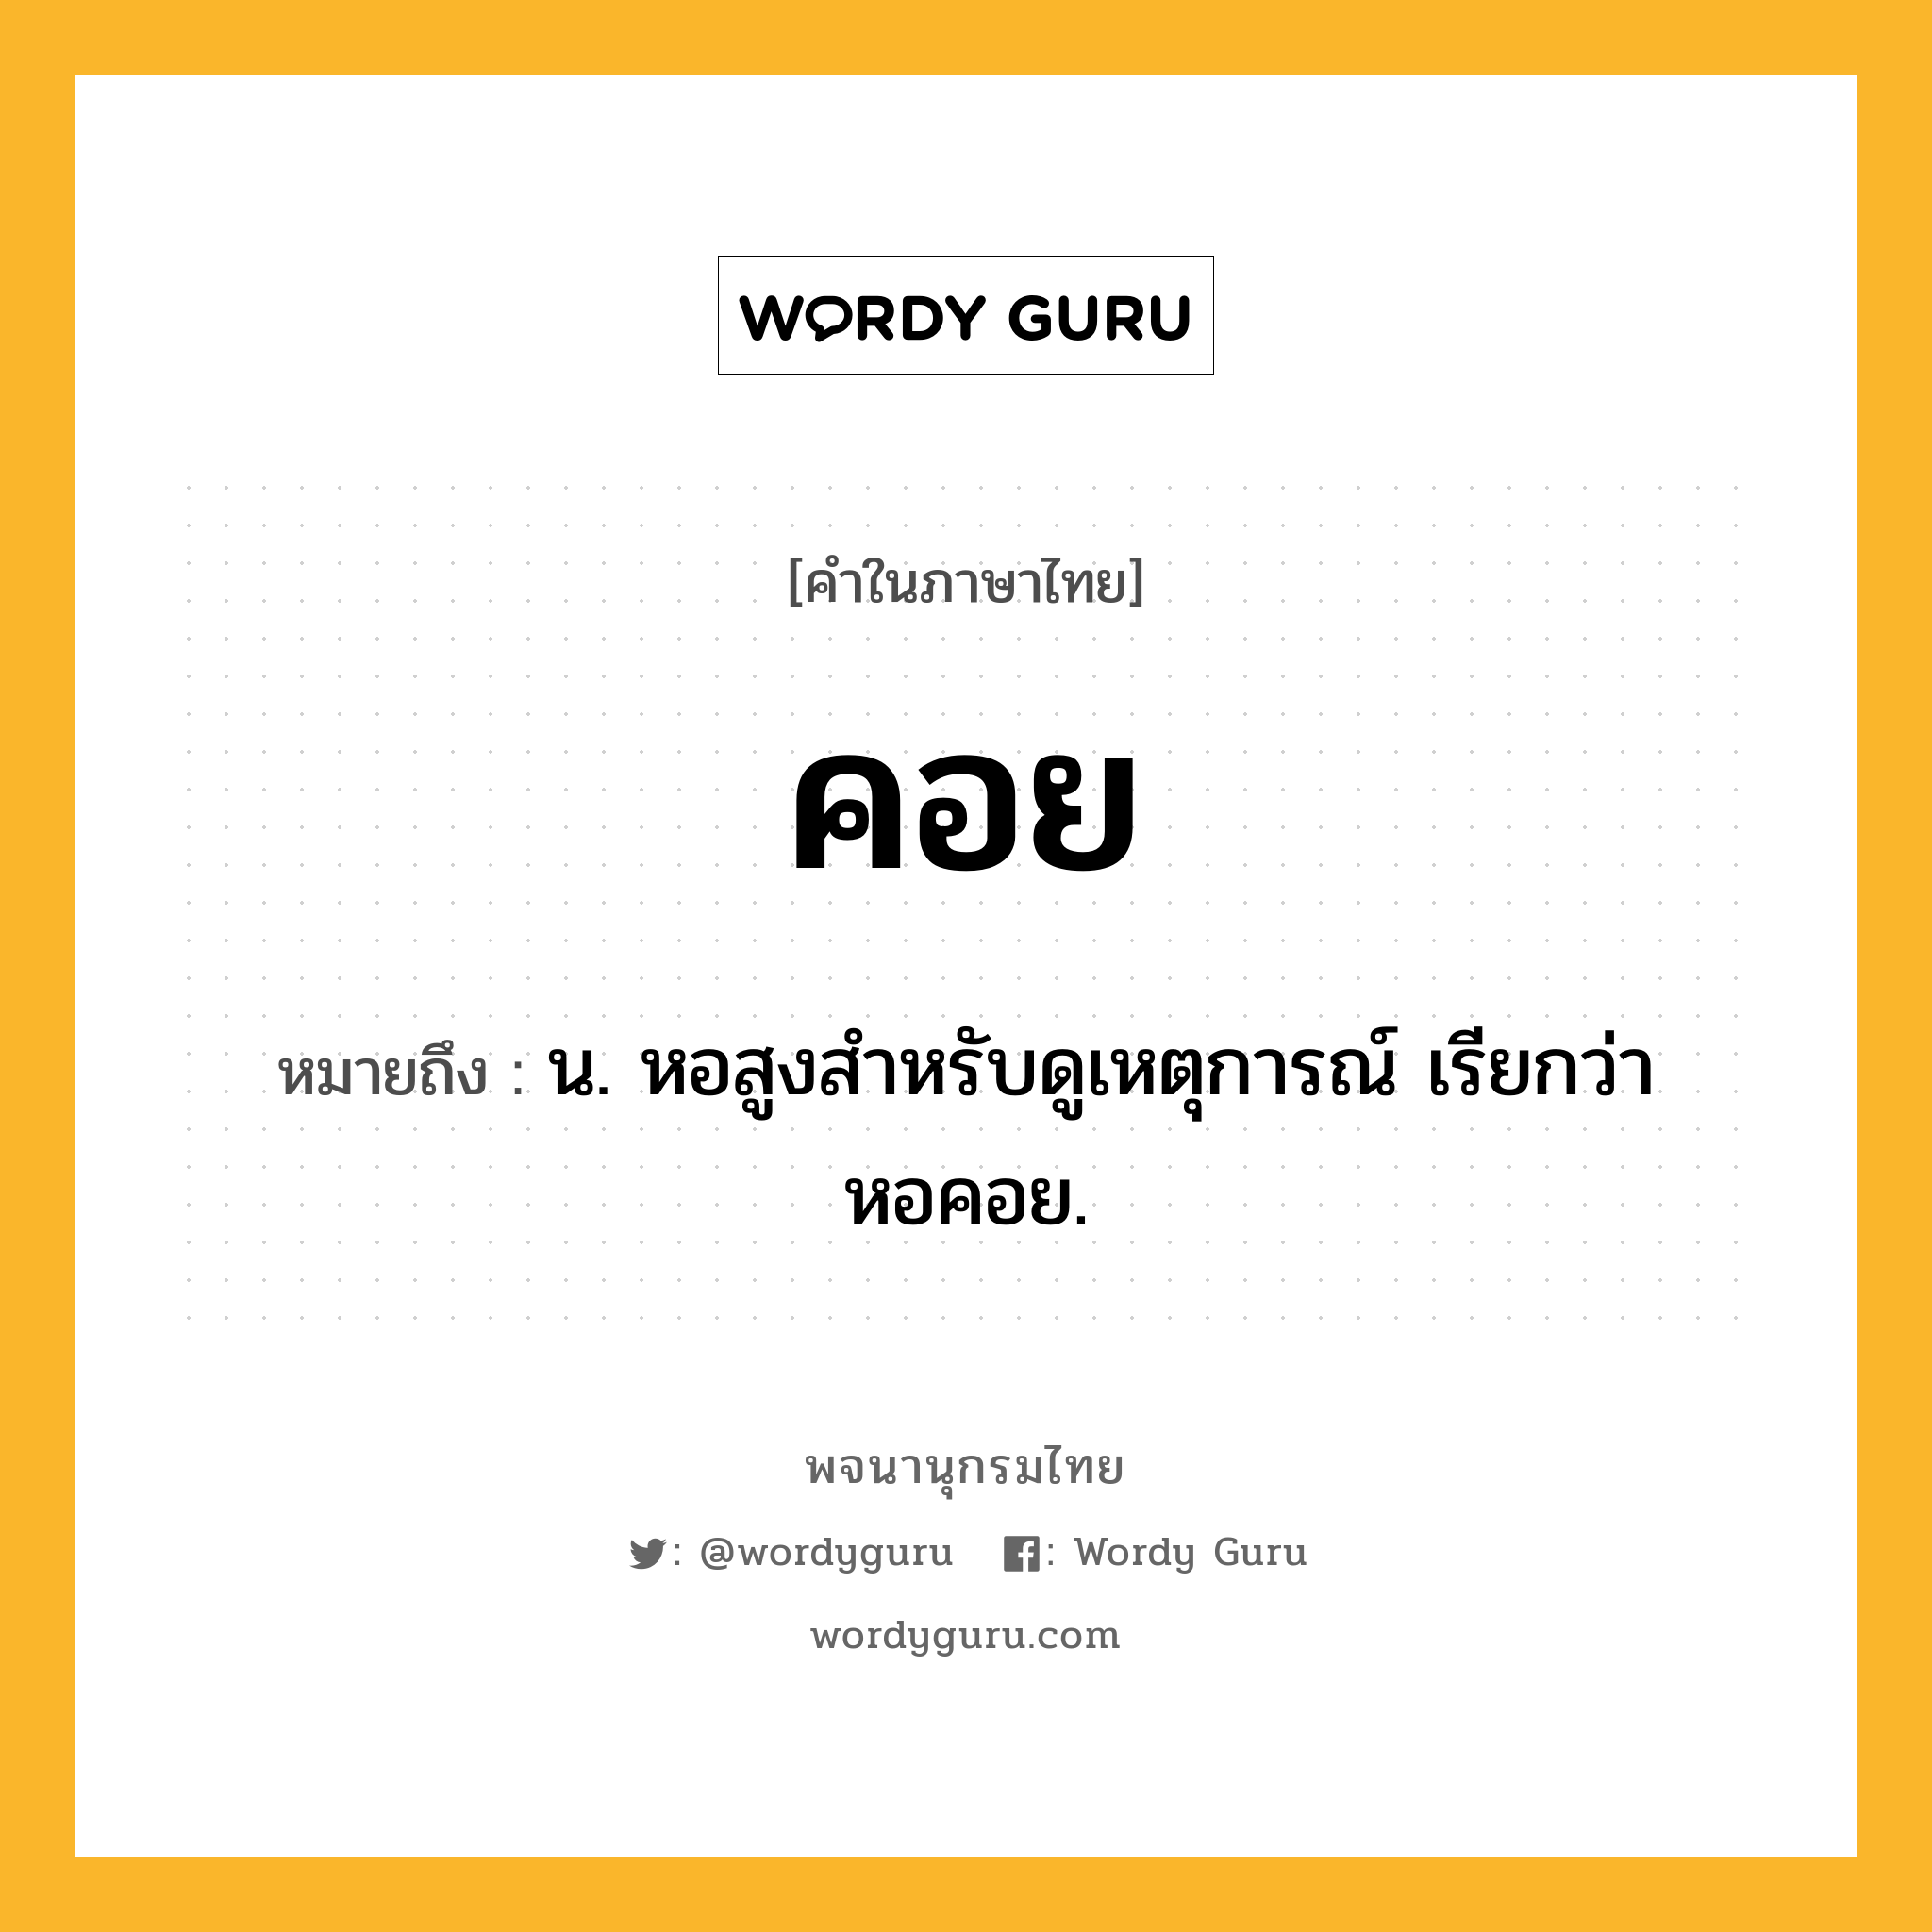 คอย หมายถึงอะไร?, คำในภาษาไทย คอย หมายถึง น. หอสูงสําหรับดูเหตุการณ์ เรียกว่า หอคอย.